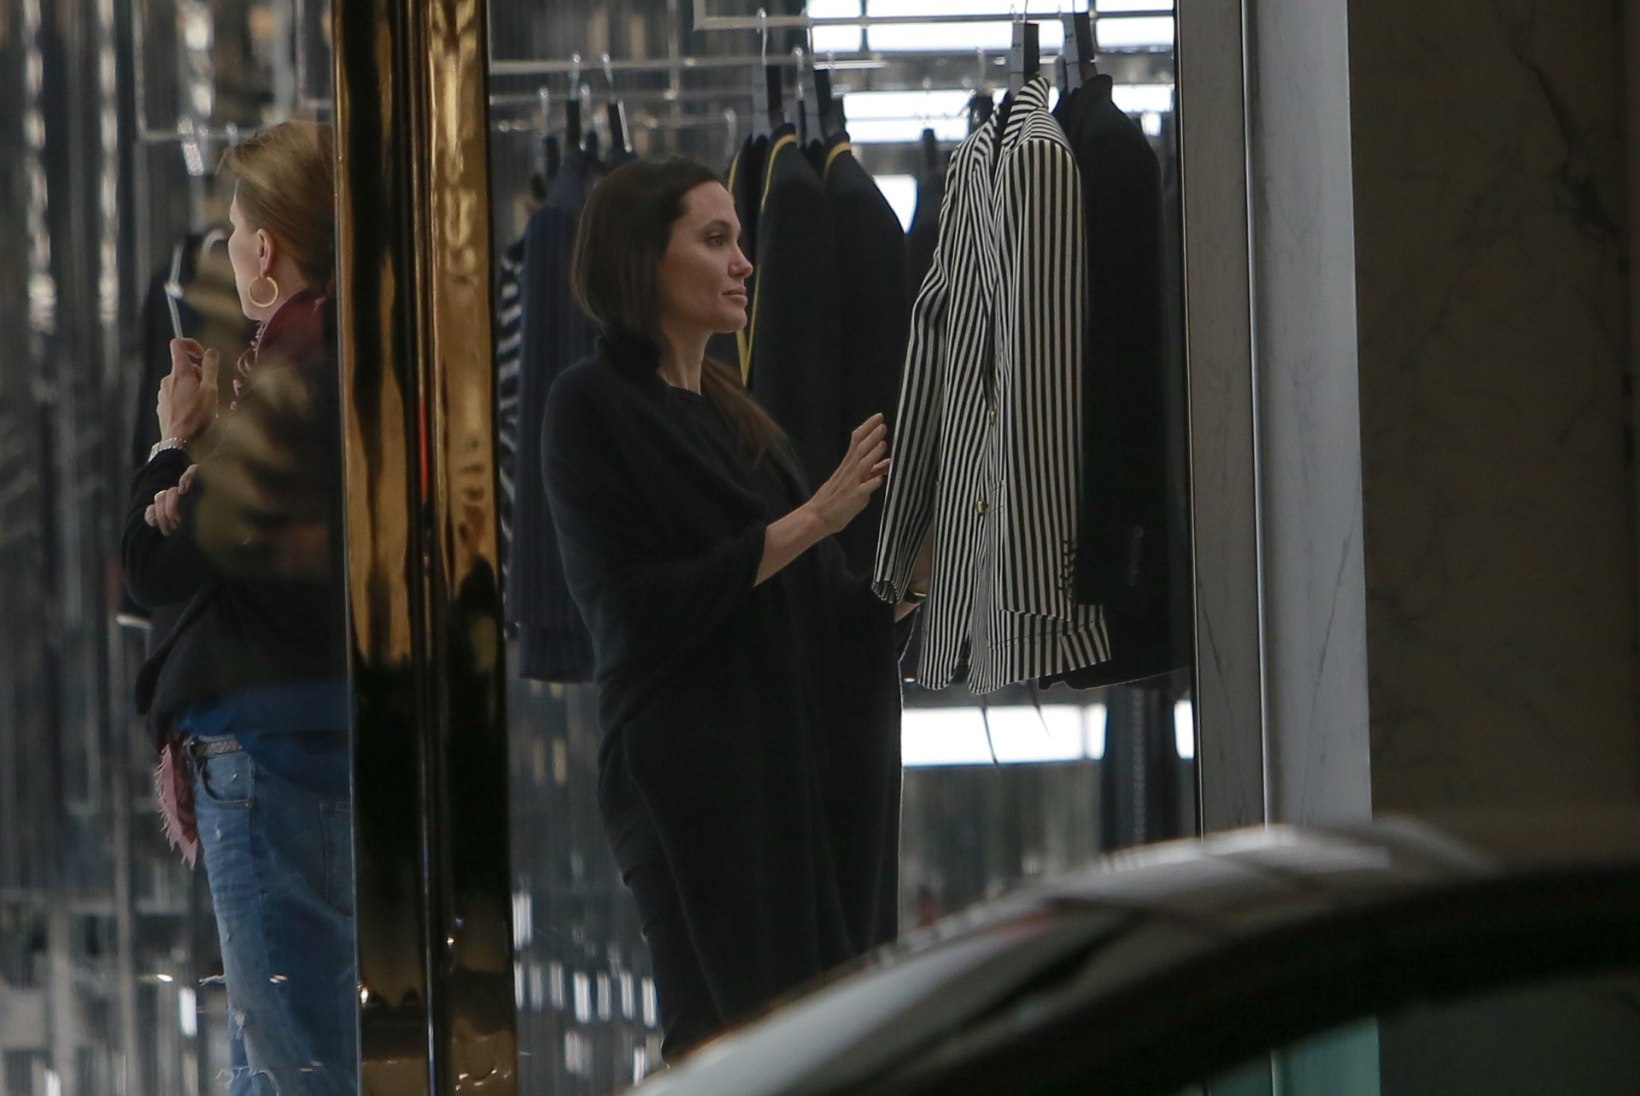 NÄDALA PAPARATSO: Angelina Jolie privaatšopingul, prints Charles suusareisil, Bruce Jenner nina nokkimas, Kanye ja Kim romantiliselt suudlemas